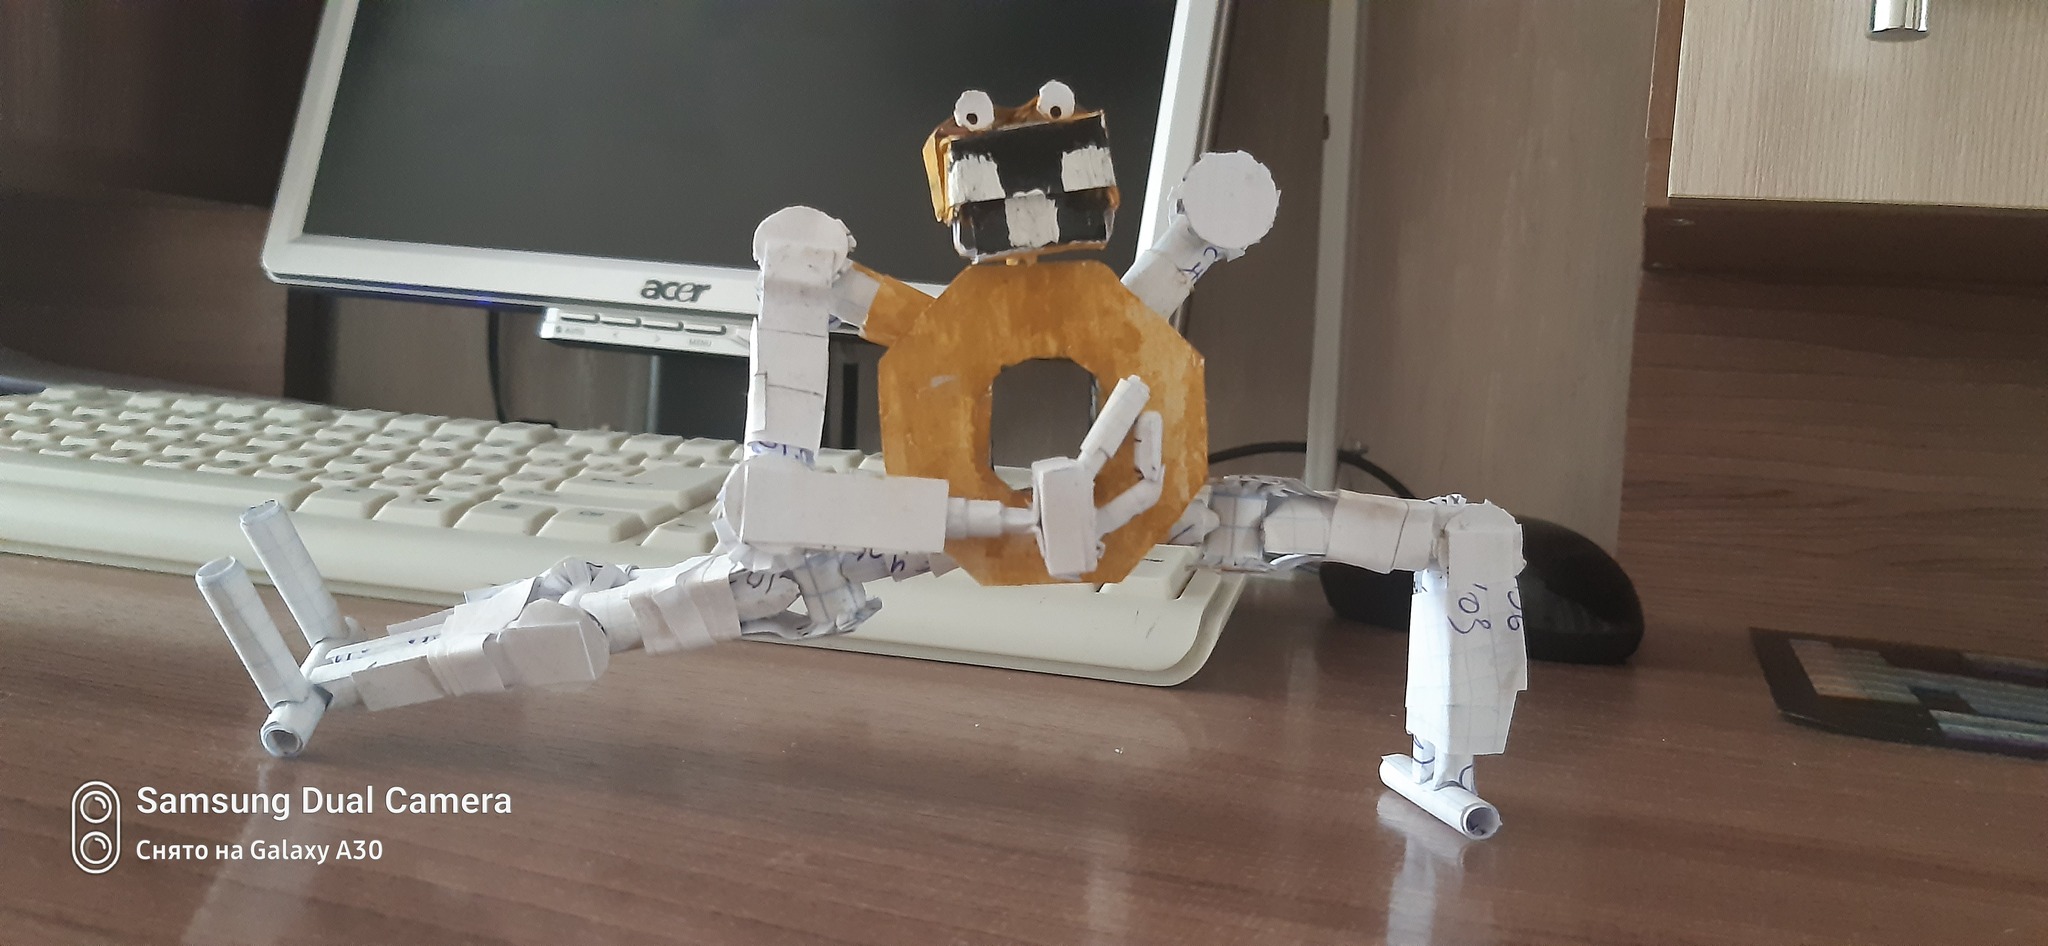 Ещё одная моя попытка сделать робота из бумаги